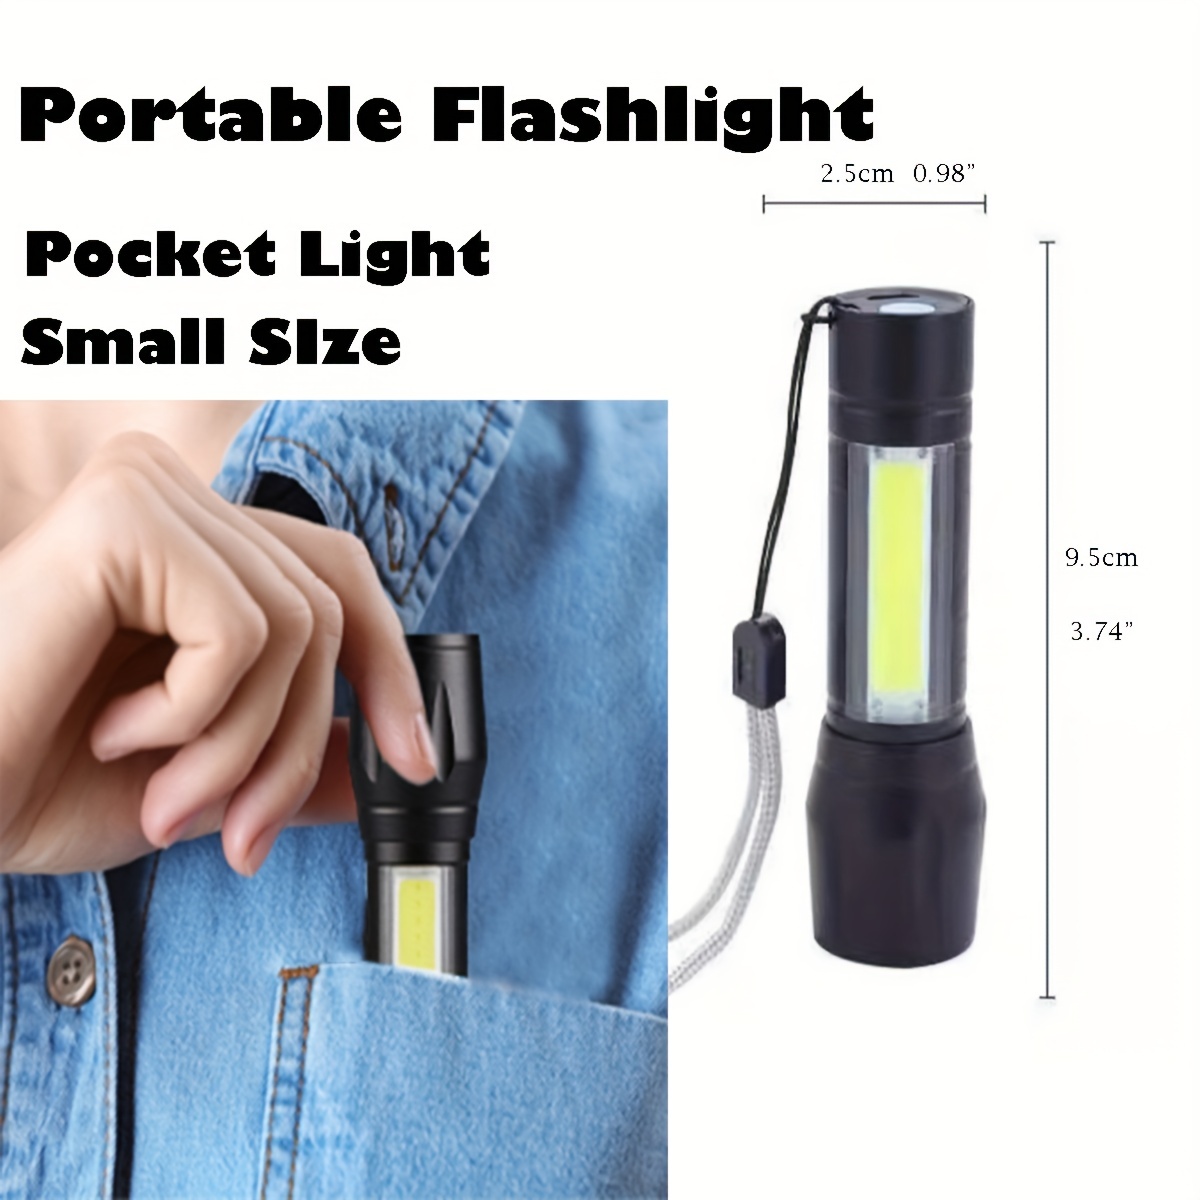 SWAT Lampe Torche puissante LED Rechargeable à prix pas cher